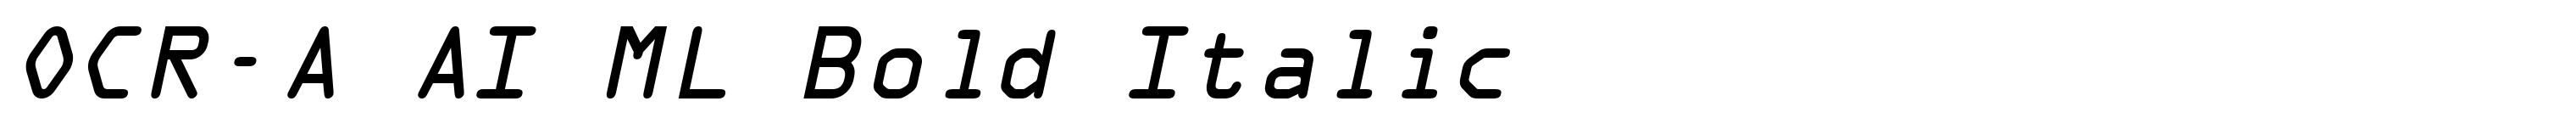 OCR-A AI ML Bold Italic